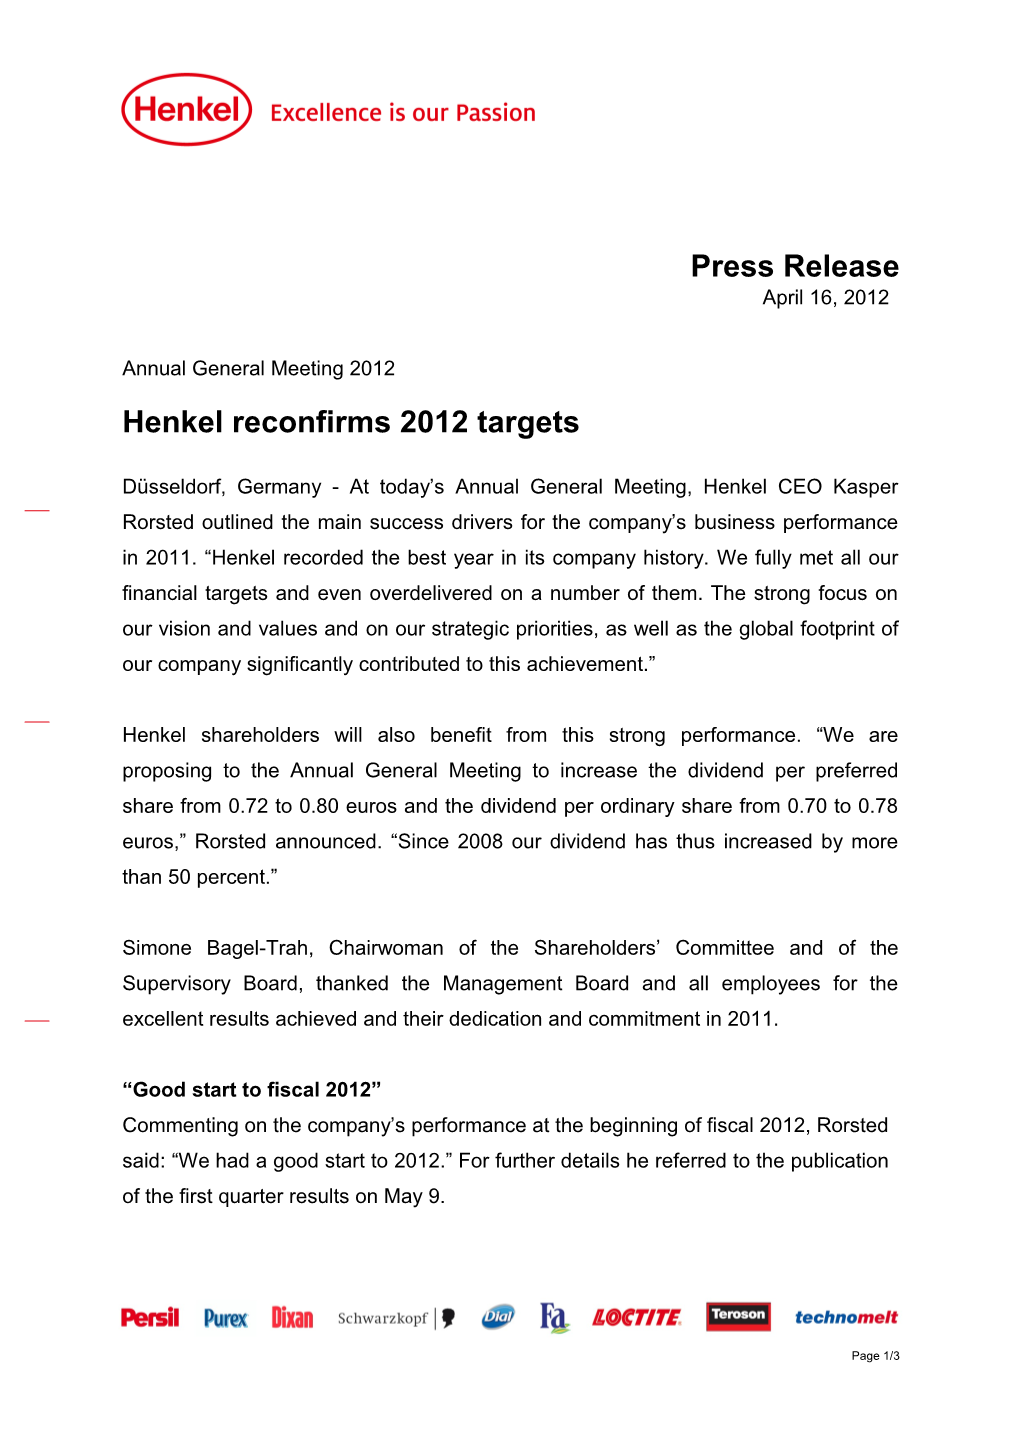 Henkel Reconfirms 2012 Targets